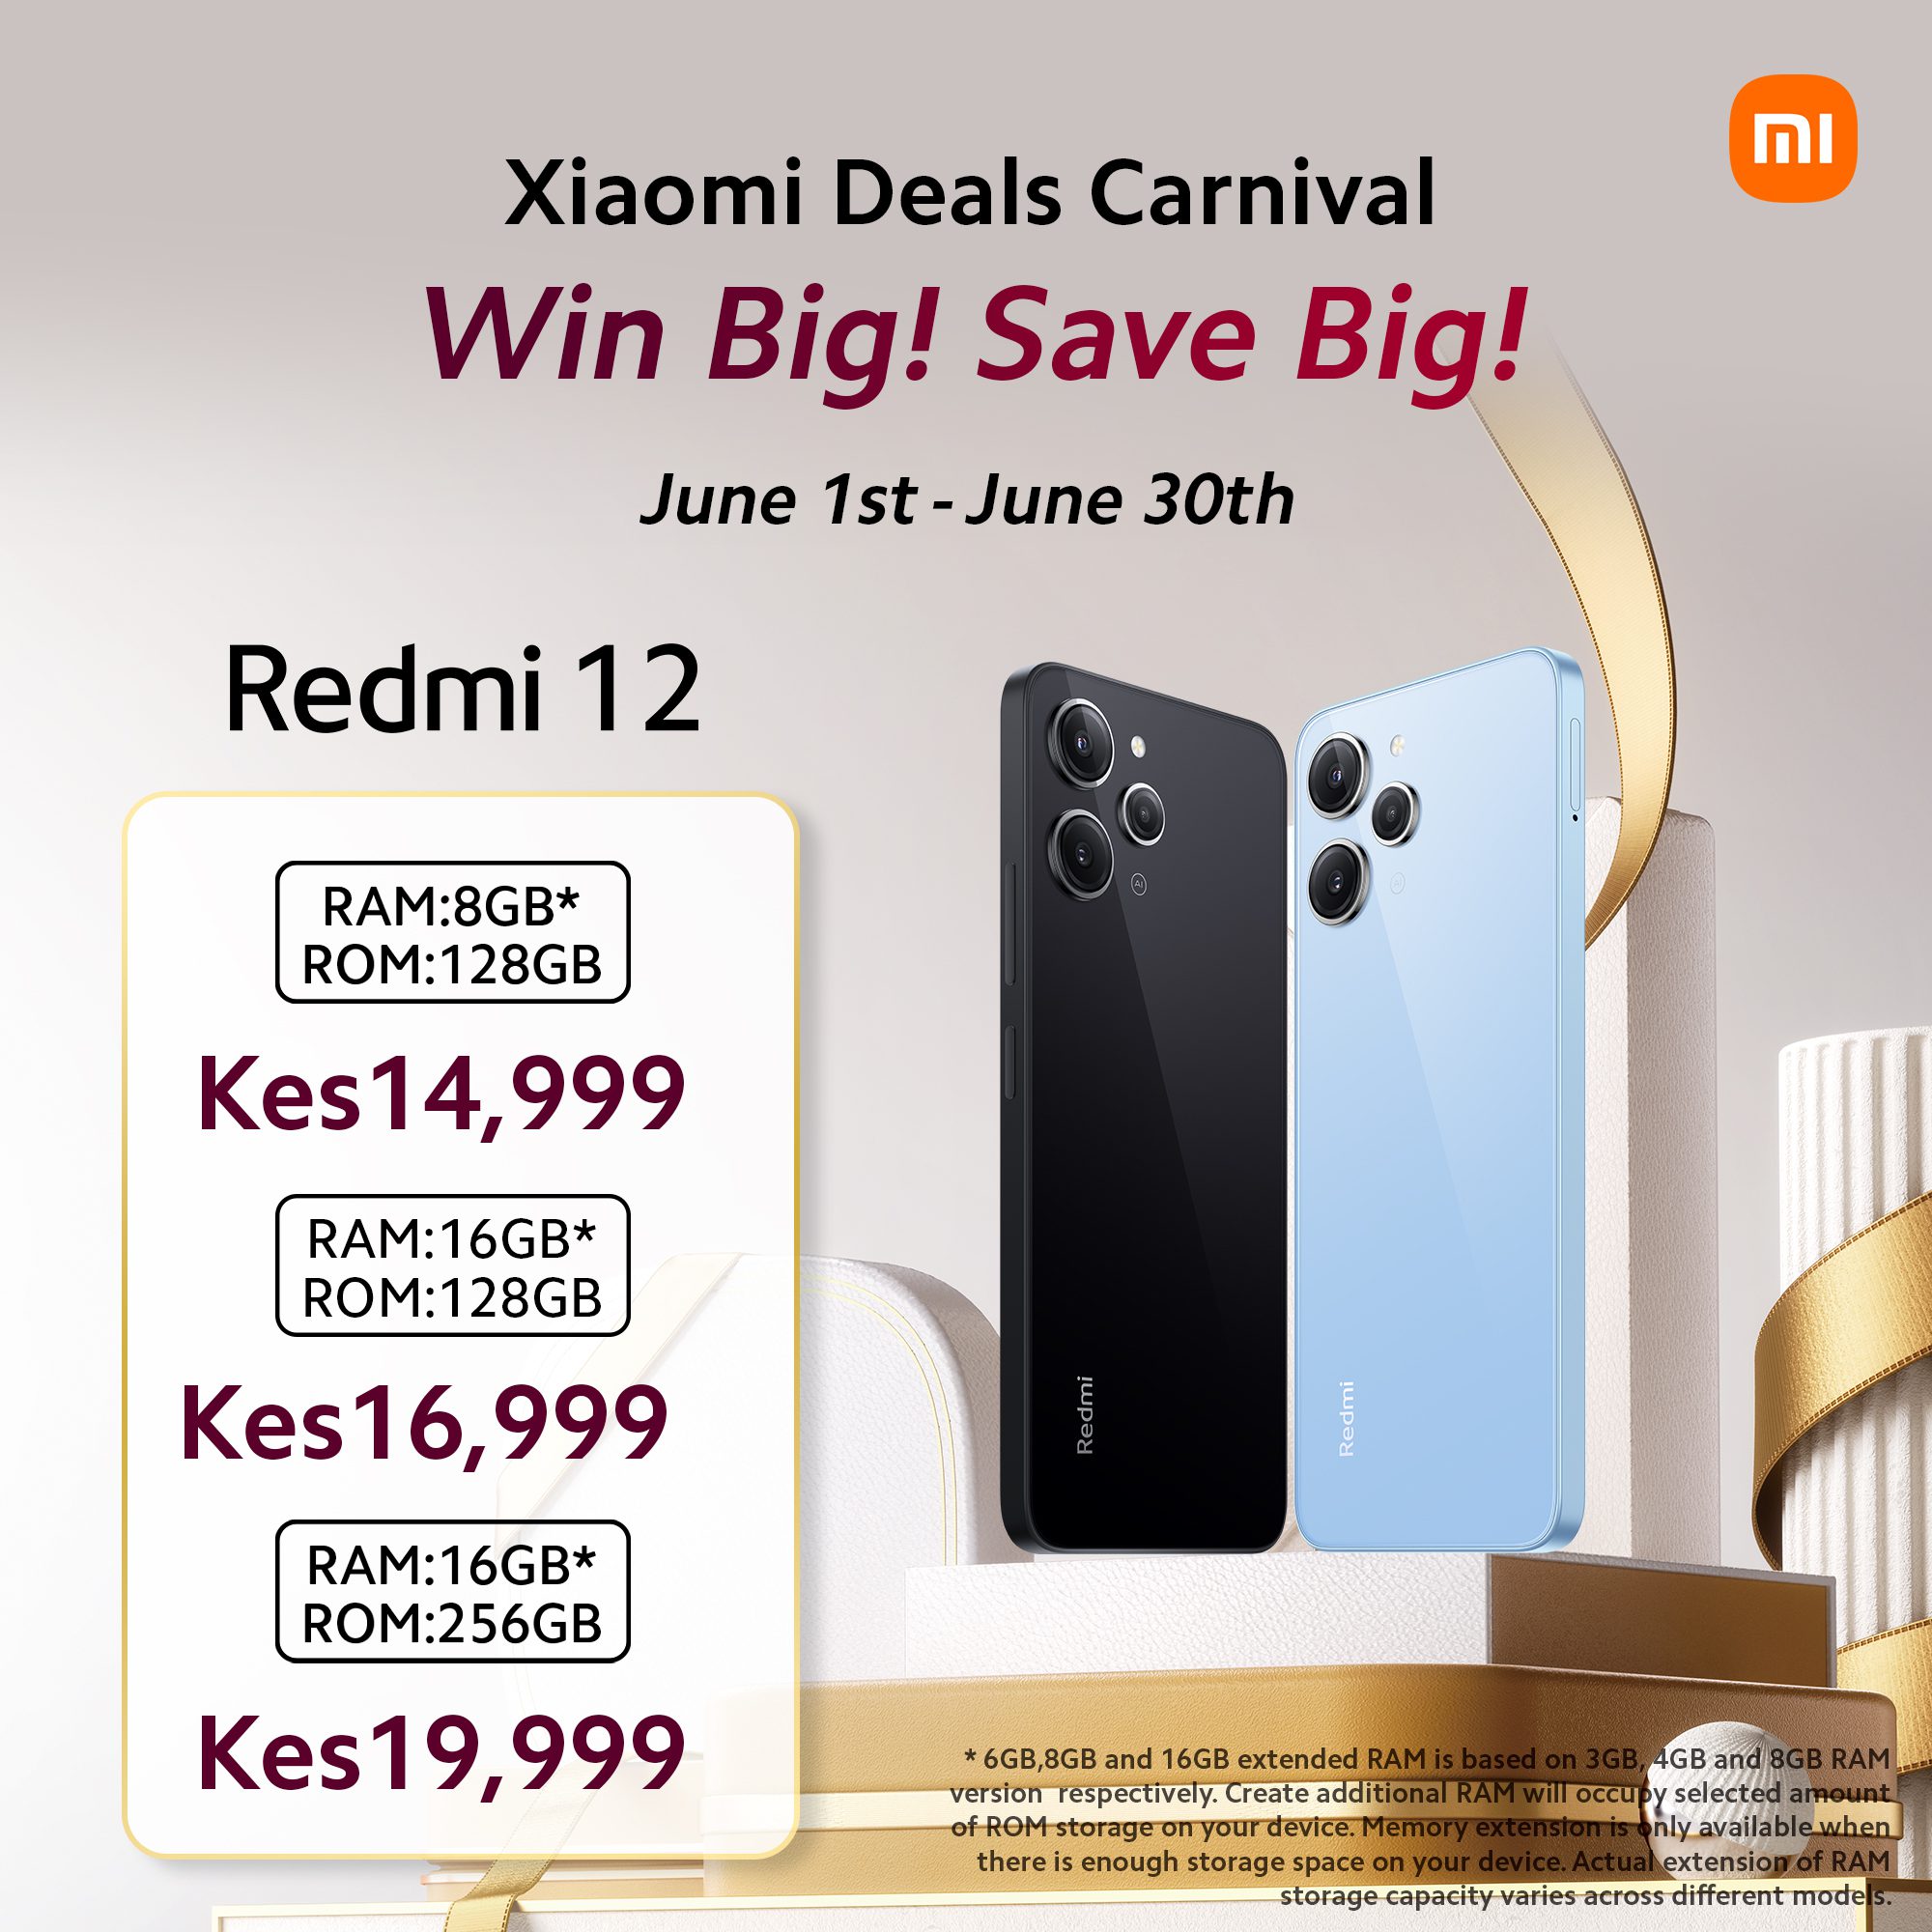 Xiaomi Kenya Launches "Xiaomi Deals Carnival": Massive Discounts on Smartphones this June